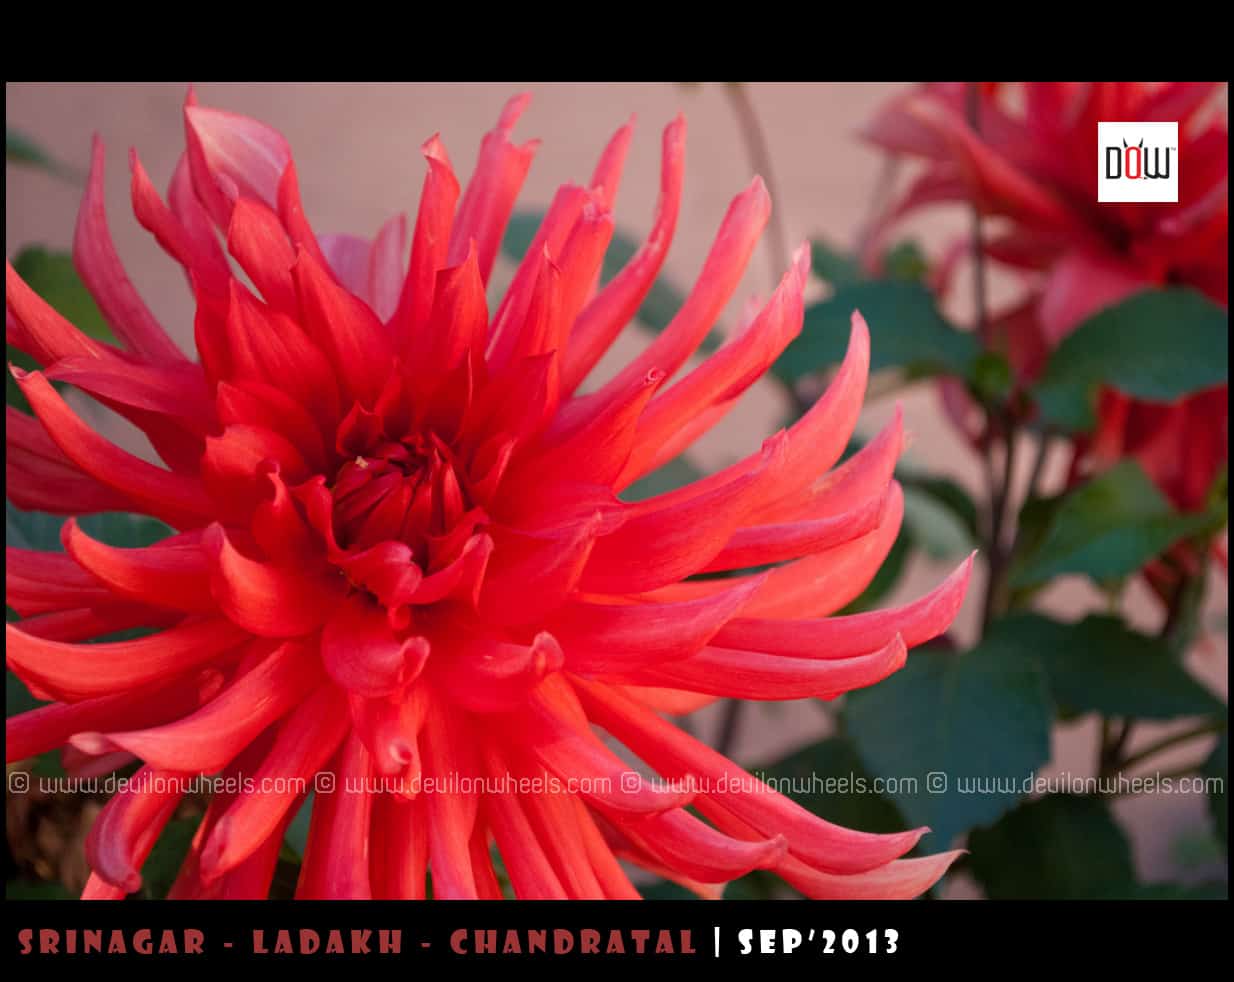 Beautiful Flowers from Leh - Ladakh